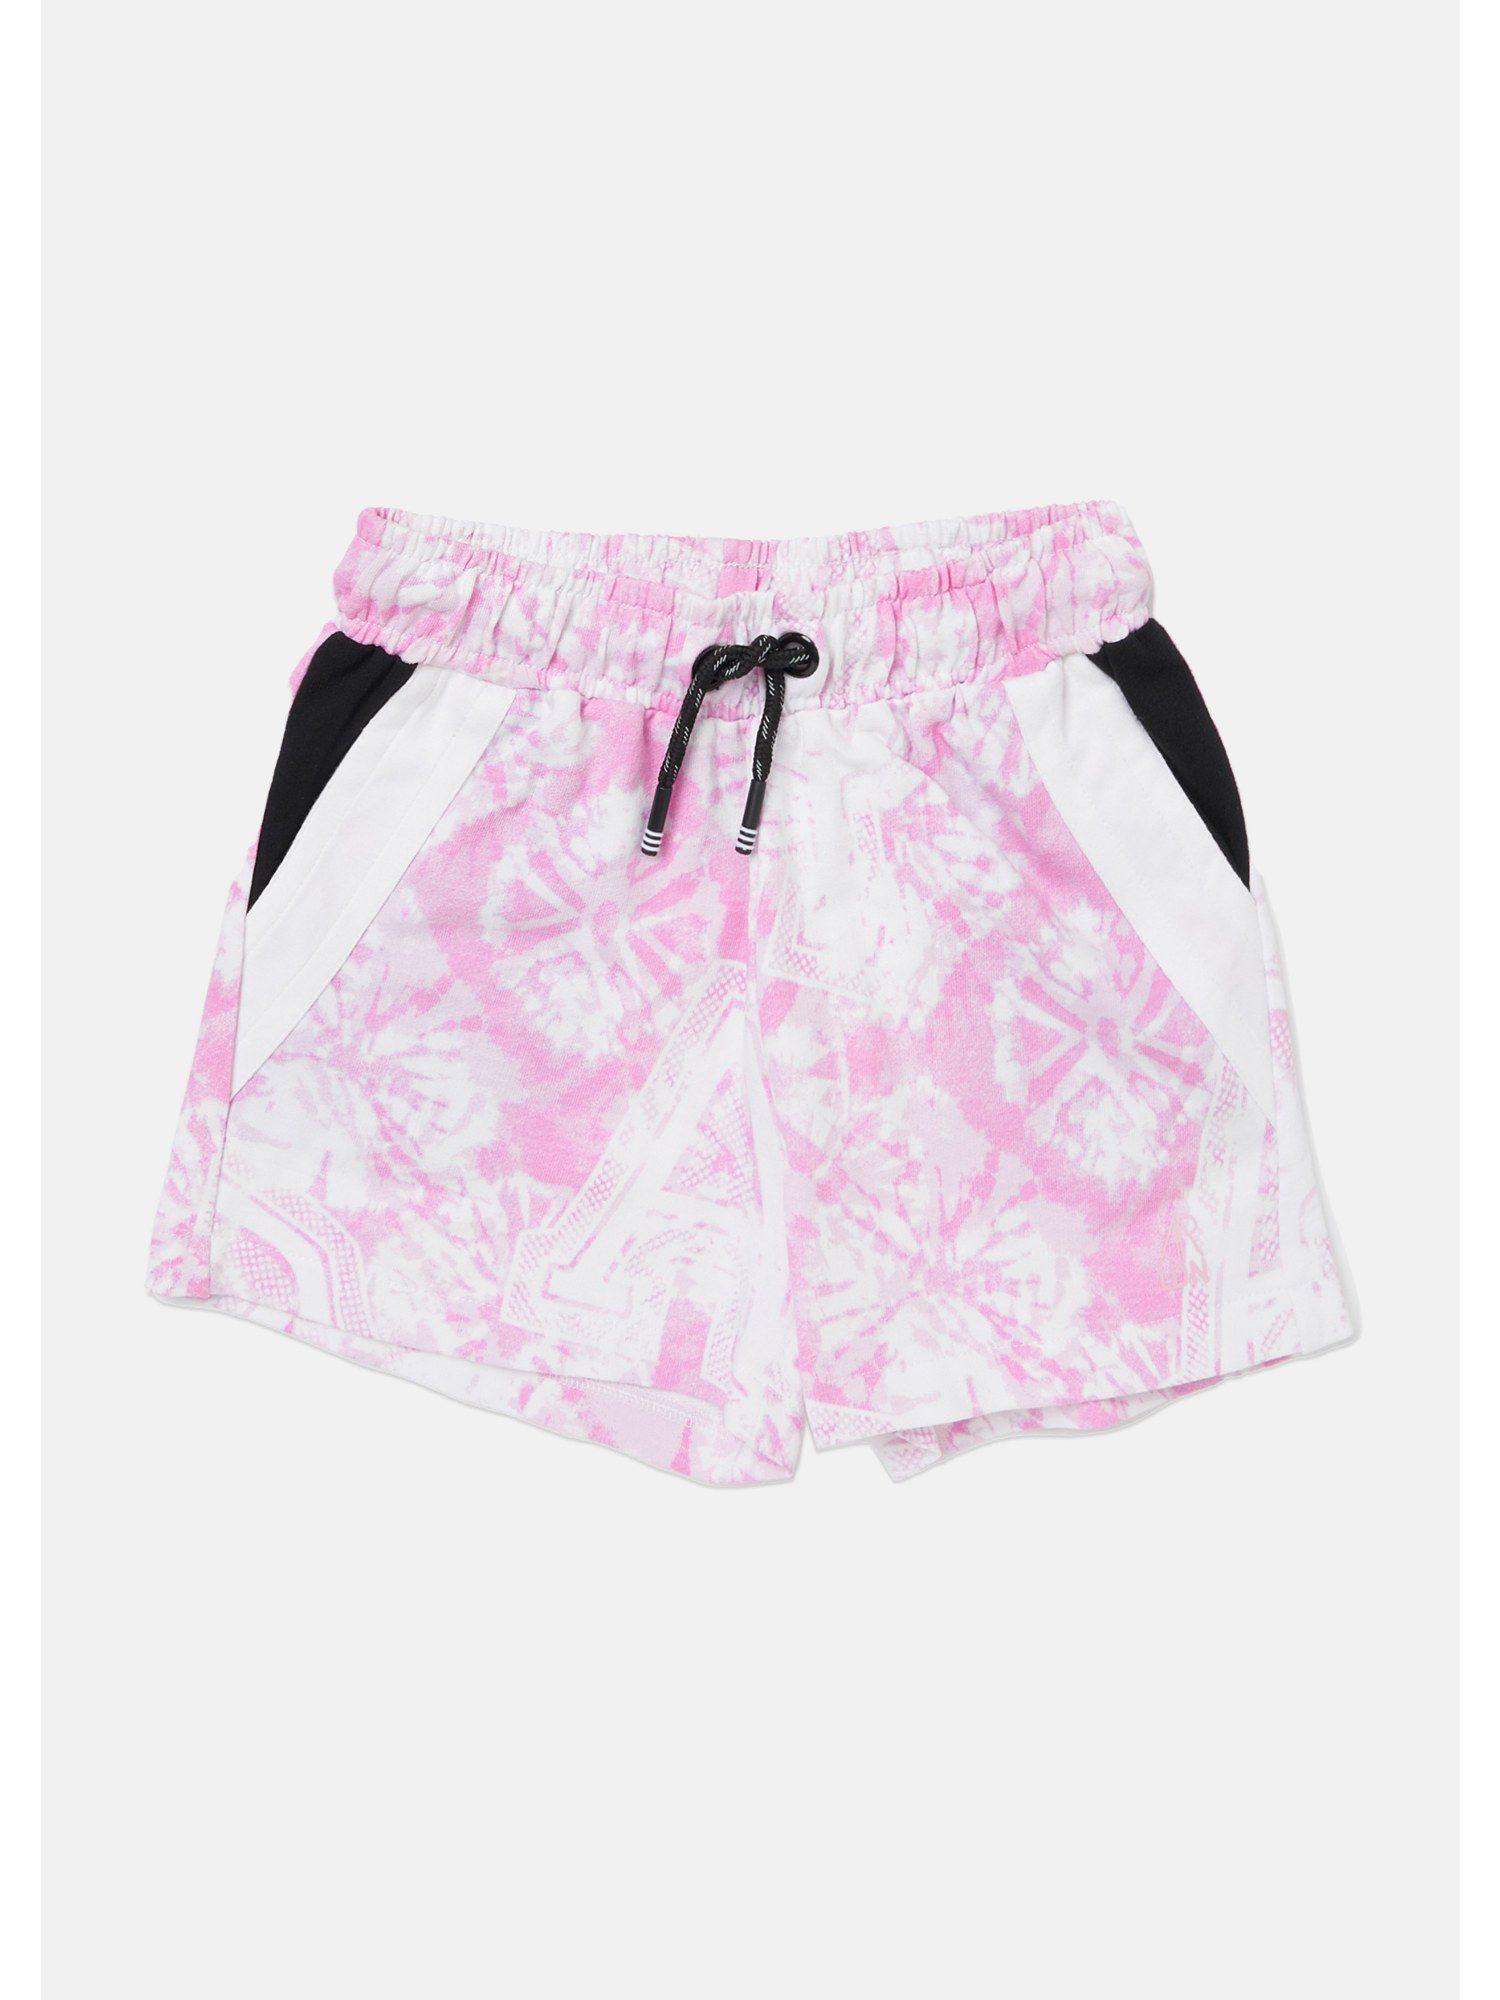 printed pink shorts